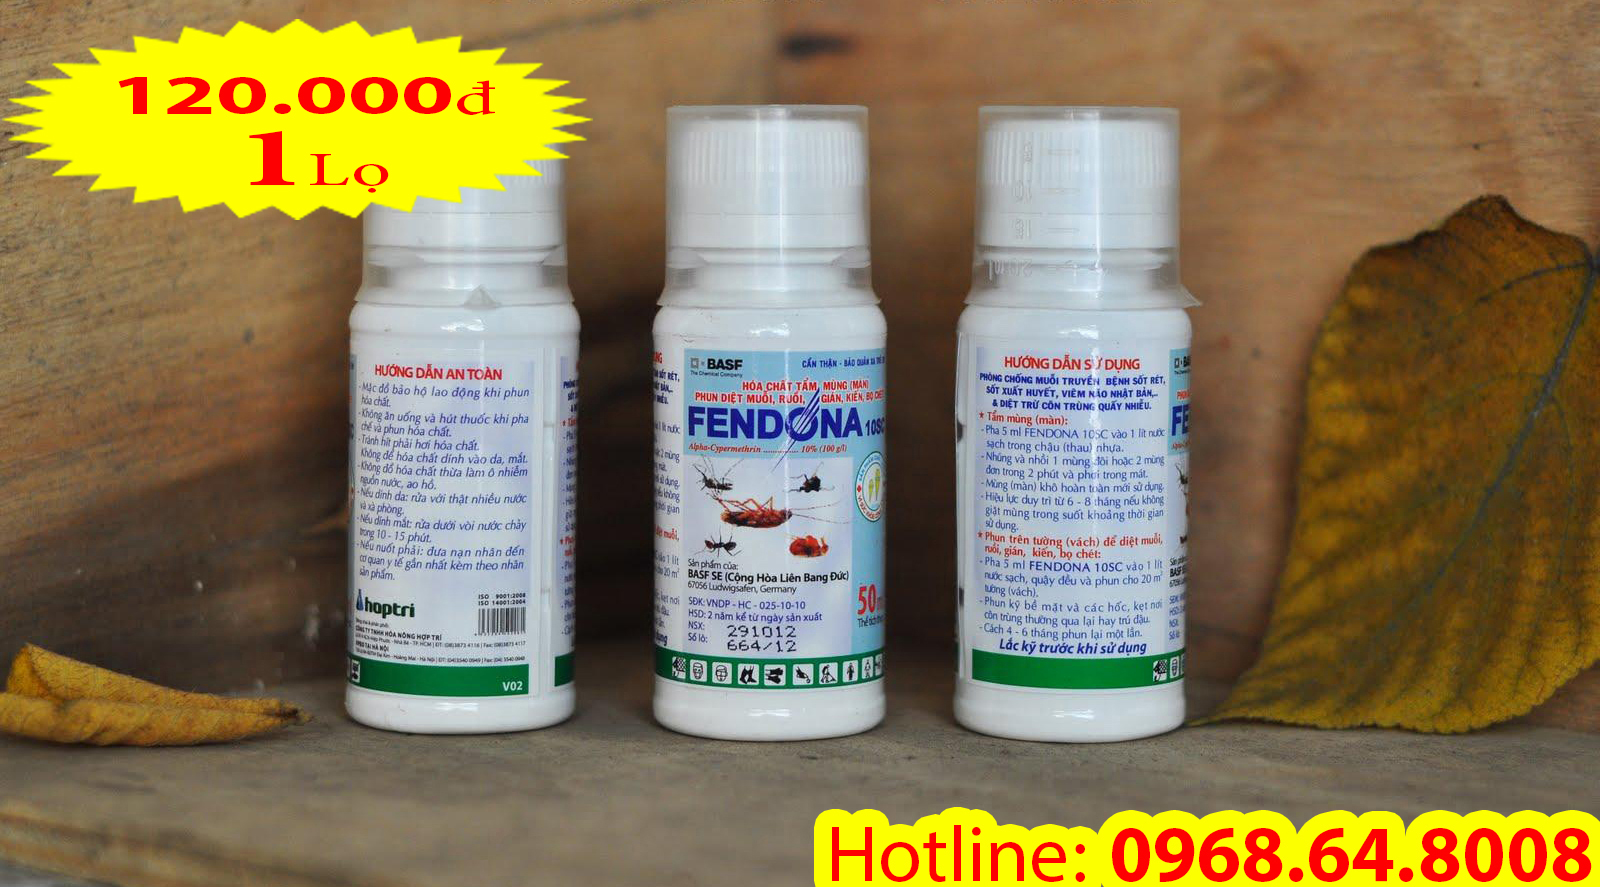 Fendona 10SC (50ml) - (BASF - CHLB ĐỨC) - Thuốc diệt côn trùng, muỗi, gián, ruồi, kiến, bọ chét...